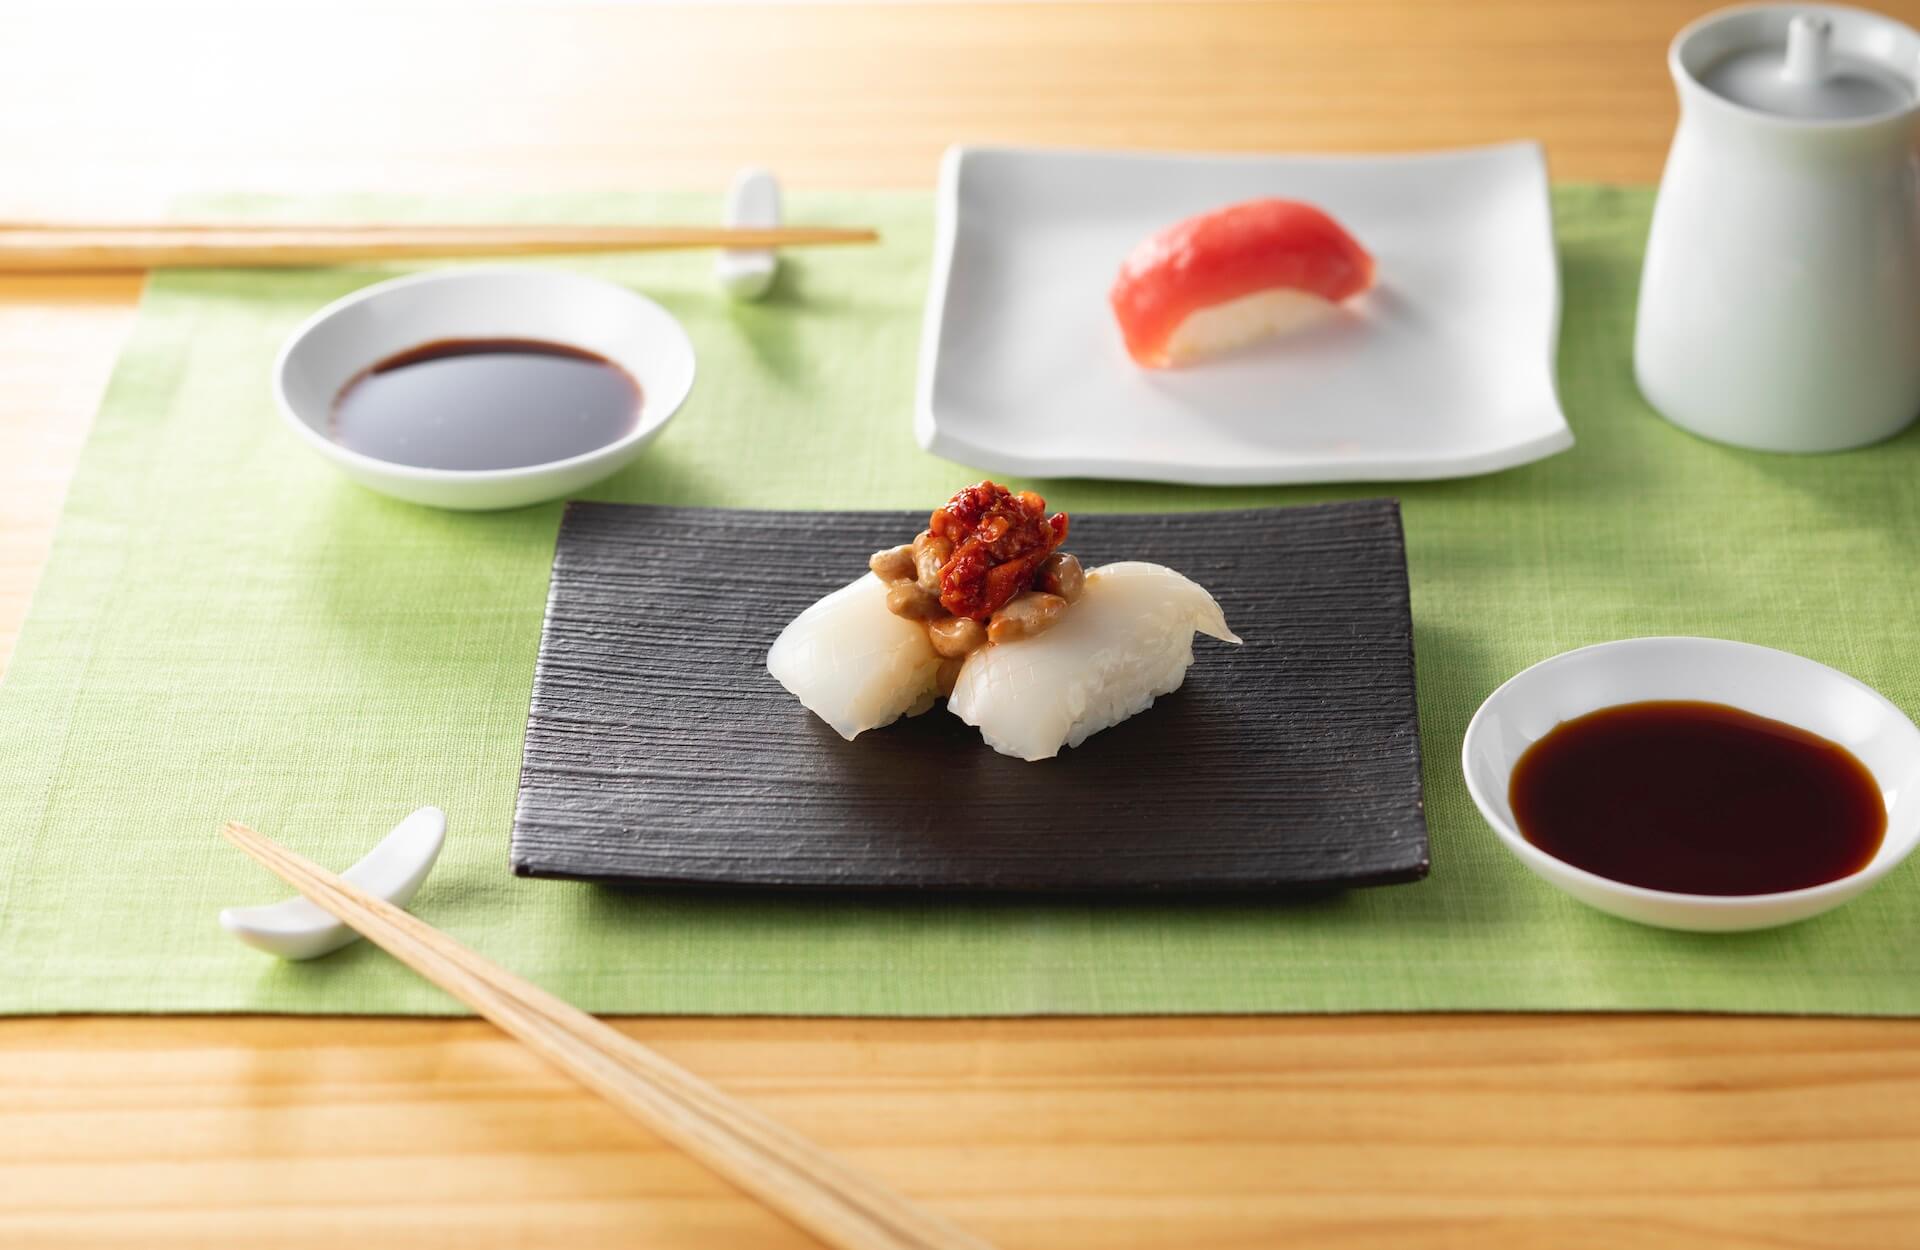 おうちで手作りはま寿司を楽しもう！人気・贅沢ネタ11種としゃり30貫がセットになった「おうちではま寿司セット」が登場 gourmet_200424_hamazushi_06